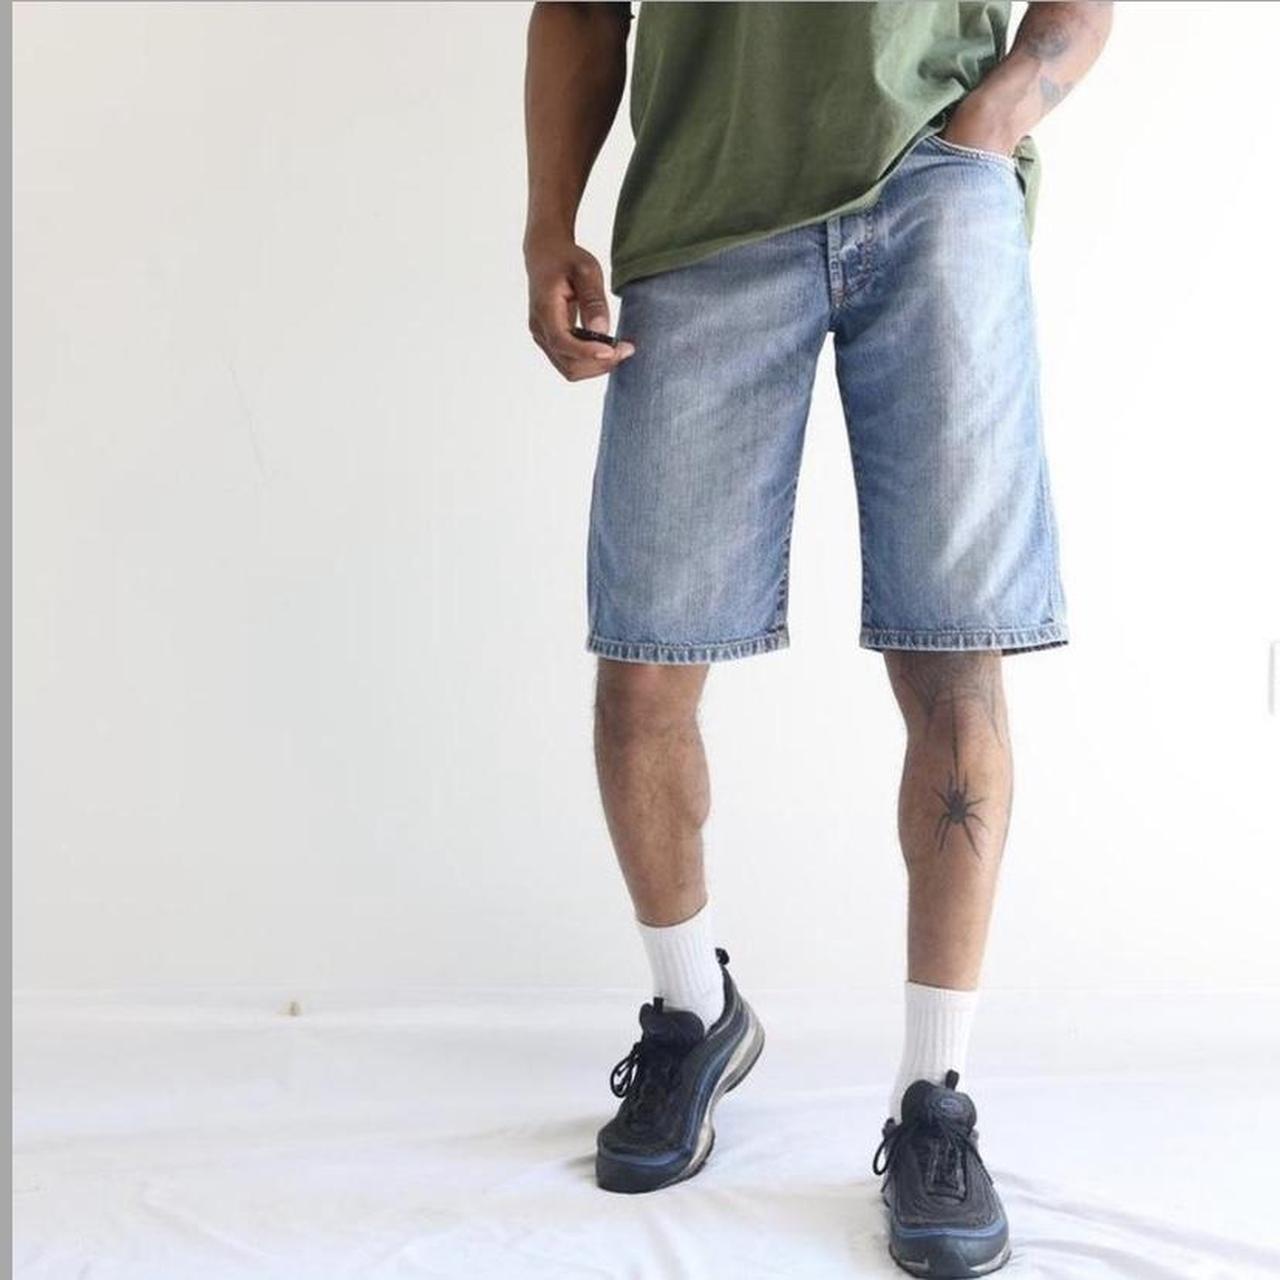 carhartt jorts / shorts waist 27 shown on... - Depop